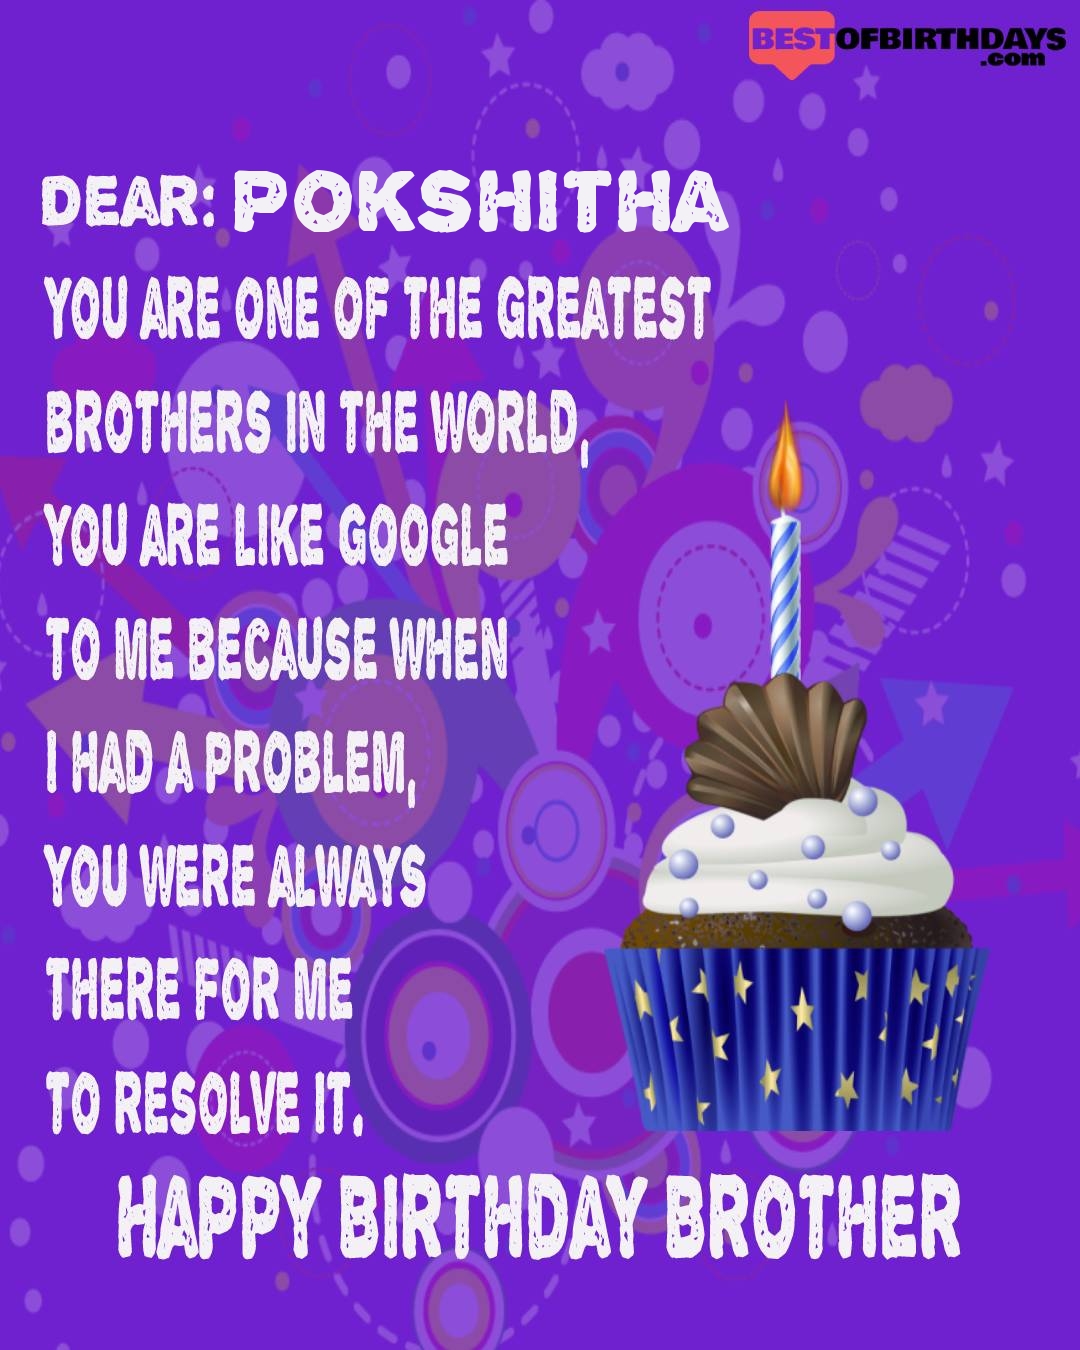 Happy birthday pokshitha bhai brother bro